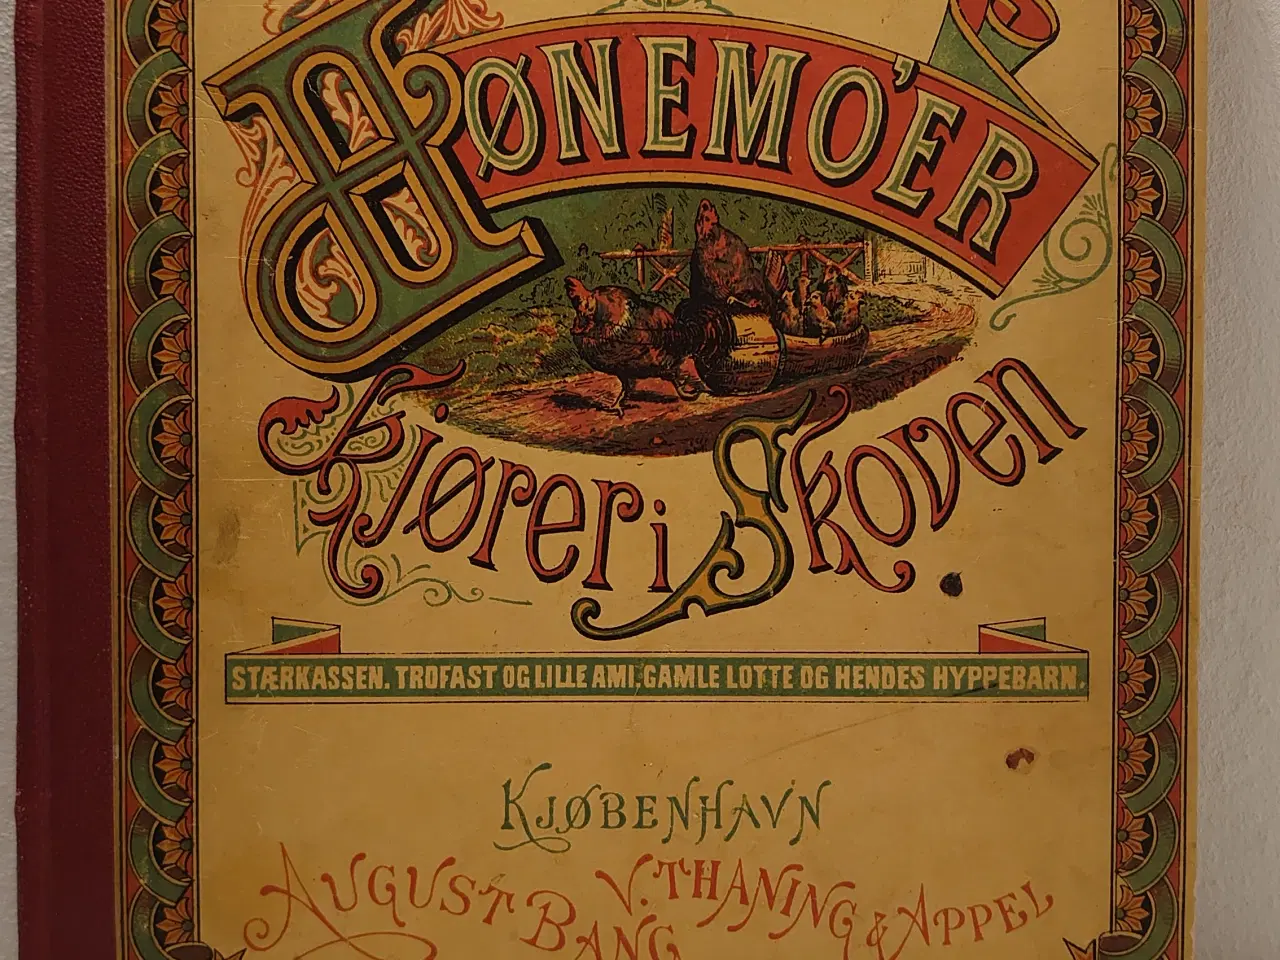 Billede 1 - E.F.Sielle: Hønemo´er kjører i Skoven. 1876.